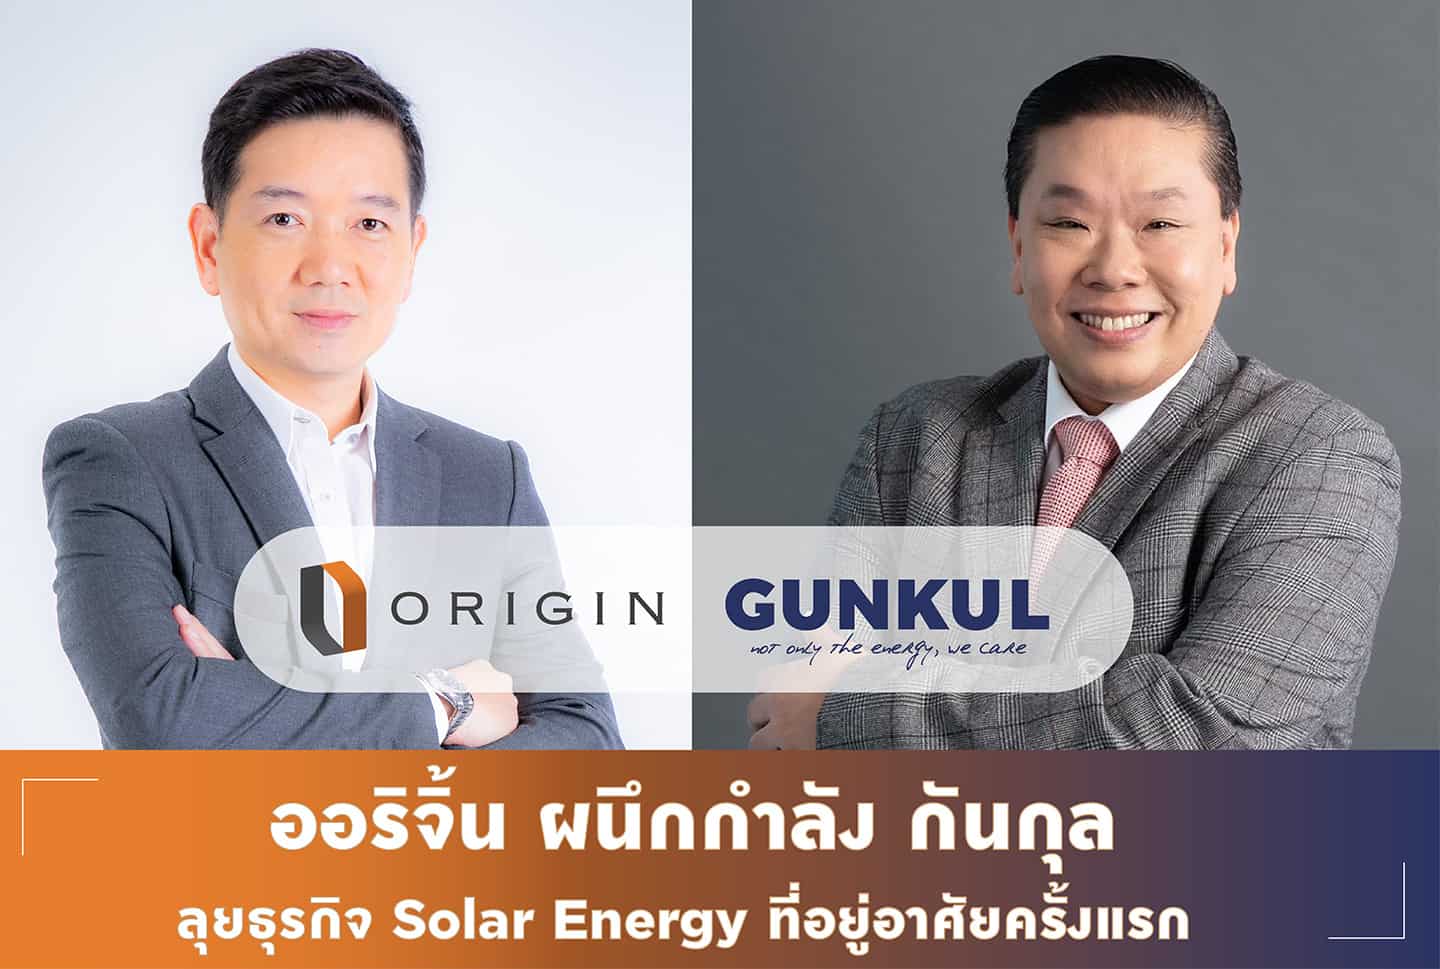 “ออริจิ้น” จับมือ “GUNKUL” ลุยธุรกิจ Solar Energy รับเมกะเทรนด์พลังงานสะอาด เล็งเสริม Private PPA ในโครงการที่อยู่อาศัยครั้งแรกภายใน Q3/64